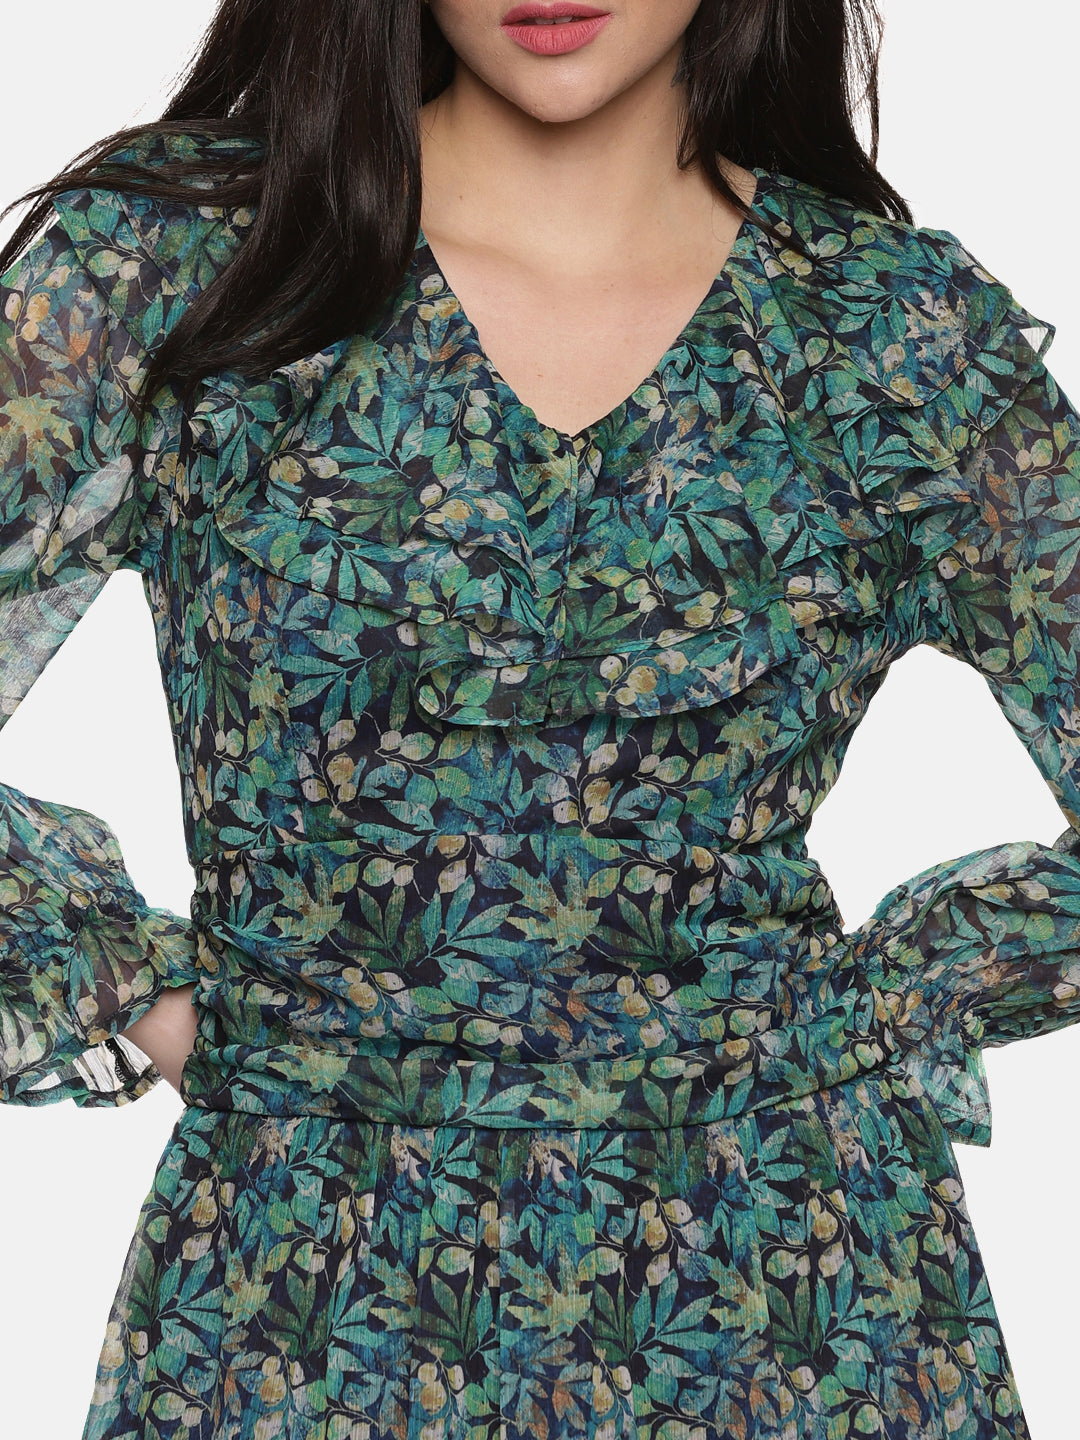 IS.U Floral Green Ruffle Mini Dress